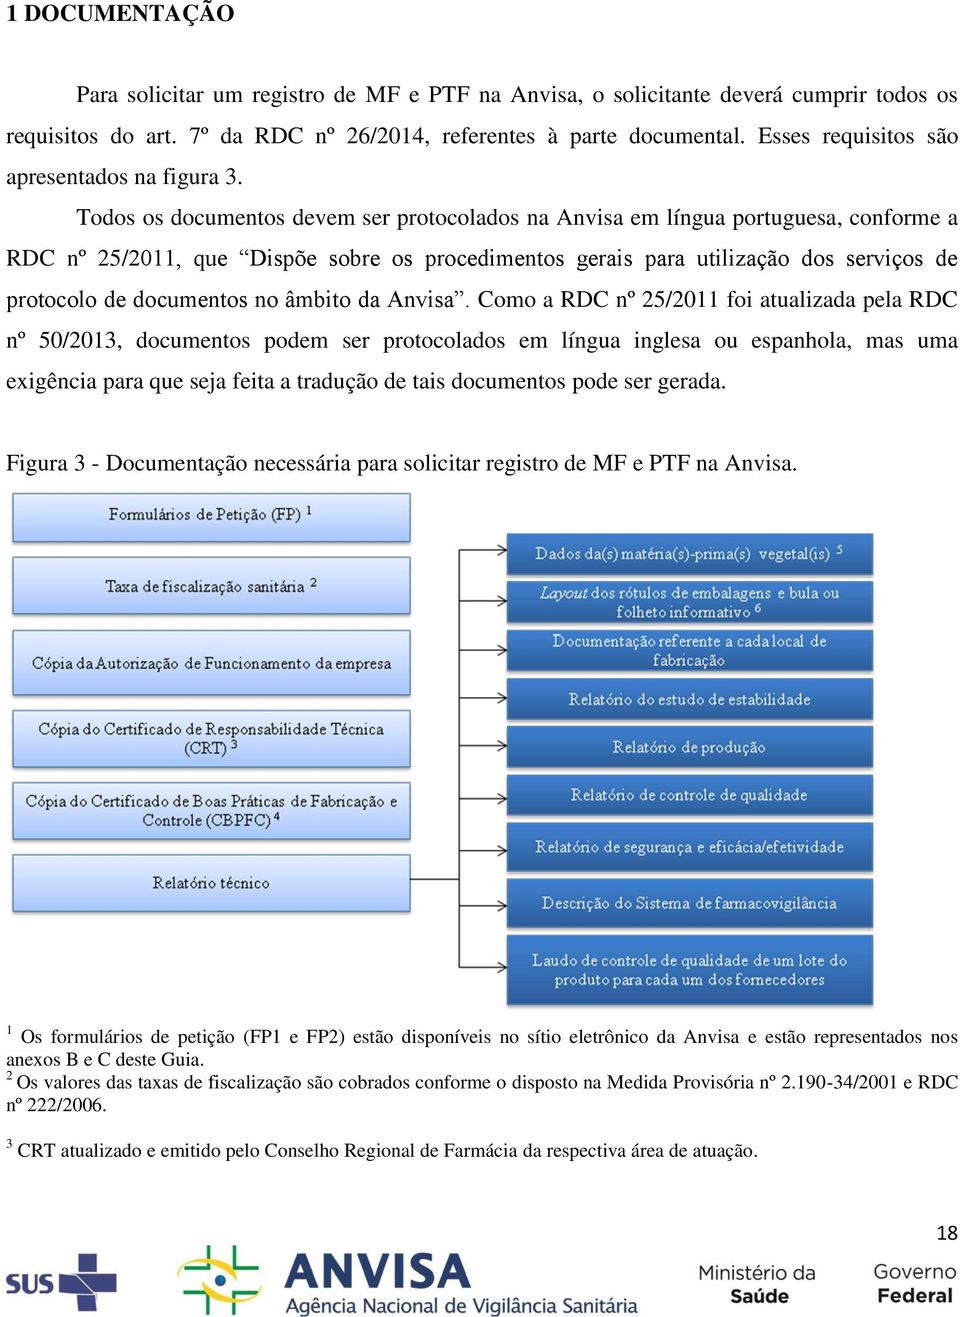 Todos os documentos devem ser protocolados na Anvisa em língua portuguesa, conforme a RDC nº 25/2011, que Dispõe sobre os procedimentos gerais para utilização dos serviços de protocolo de documentos